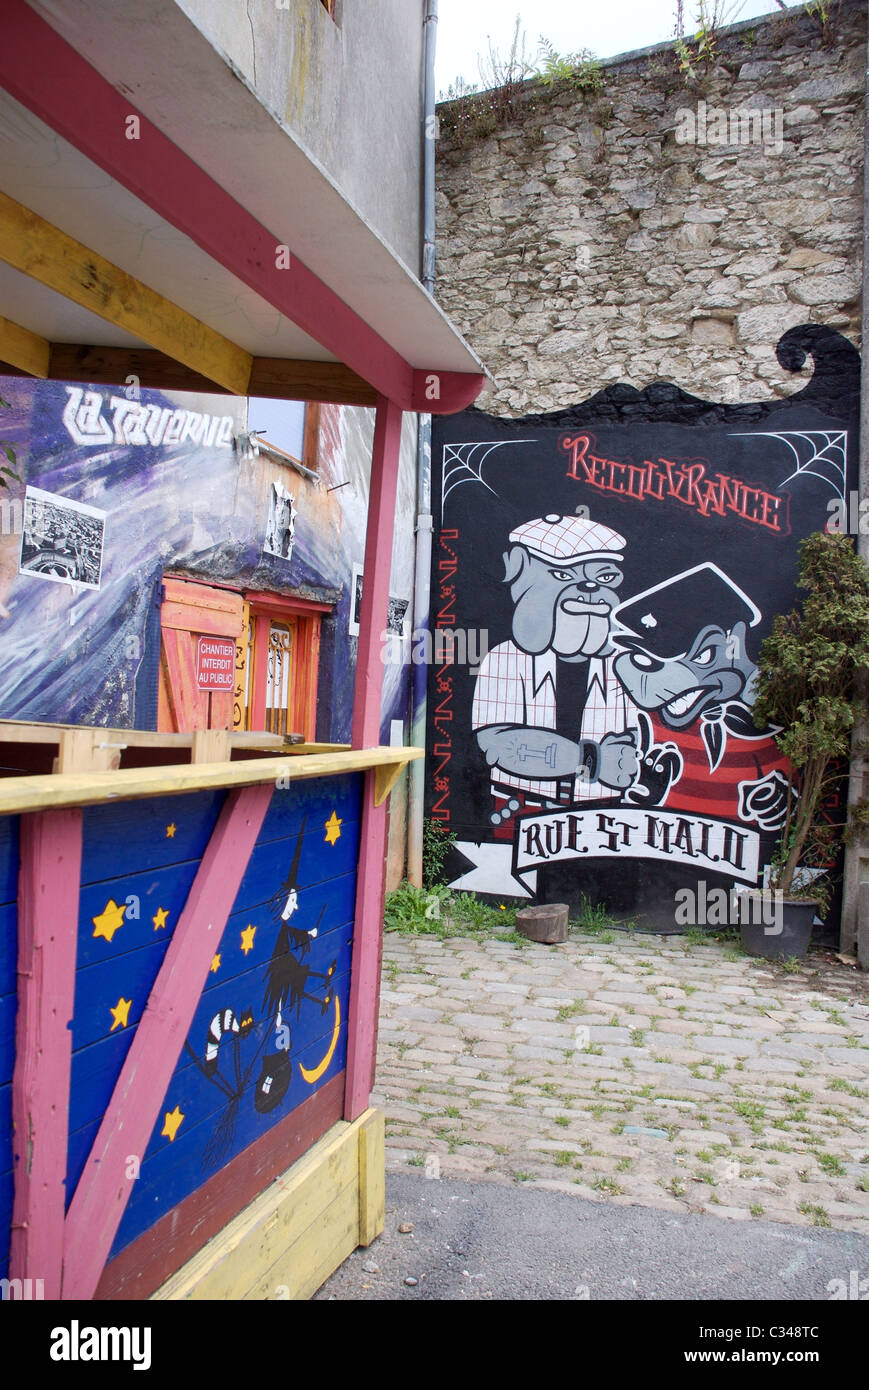 Bulldog und Ratte wall Graffiti-Kunst-Zeichen in den alten Rue Saint Malo, Brest, Bretagne, Frankreich Stockfoto